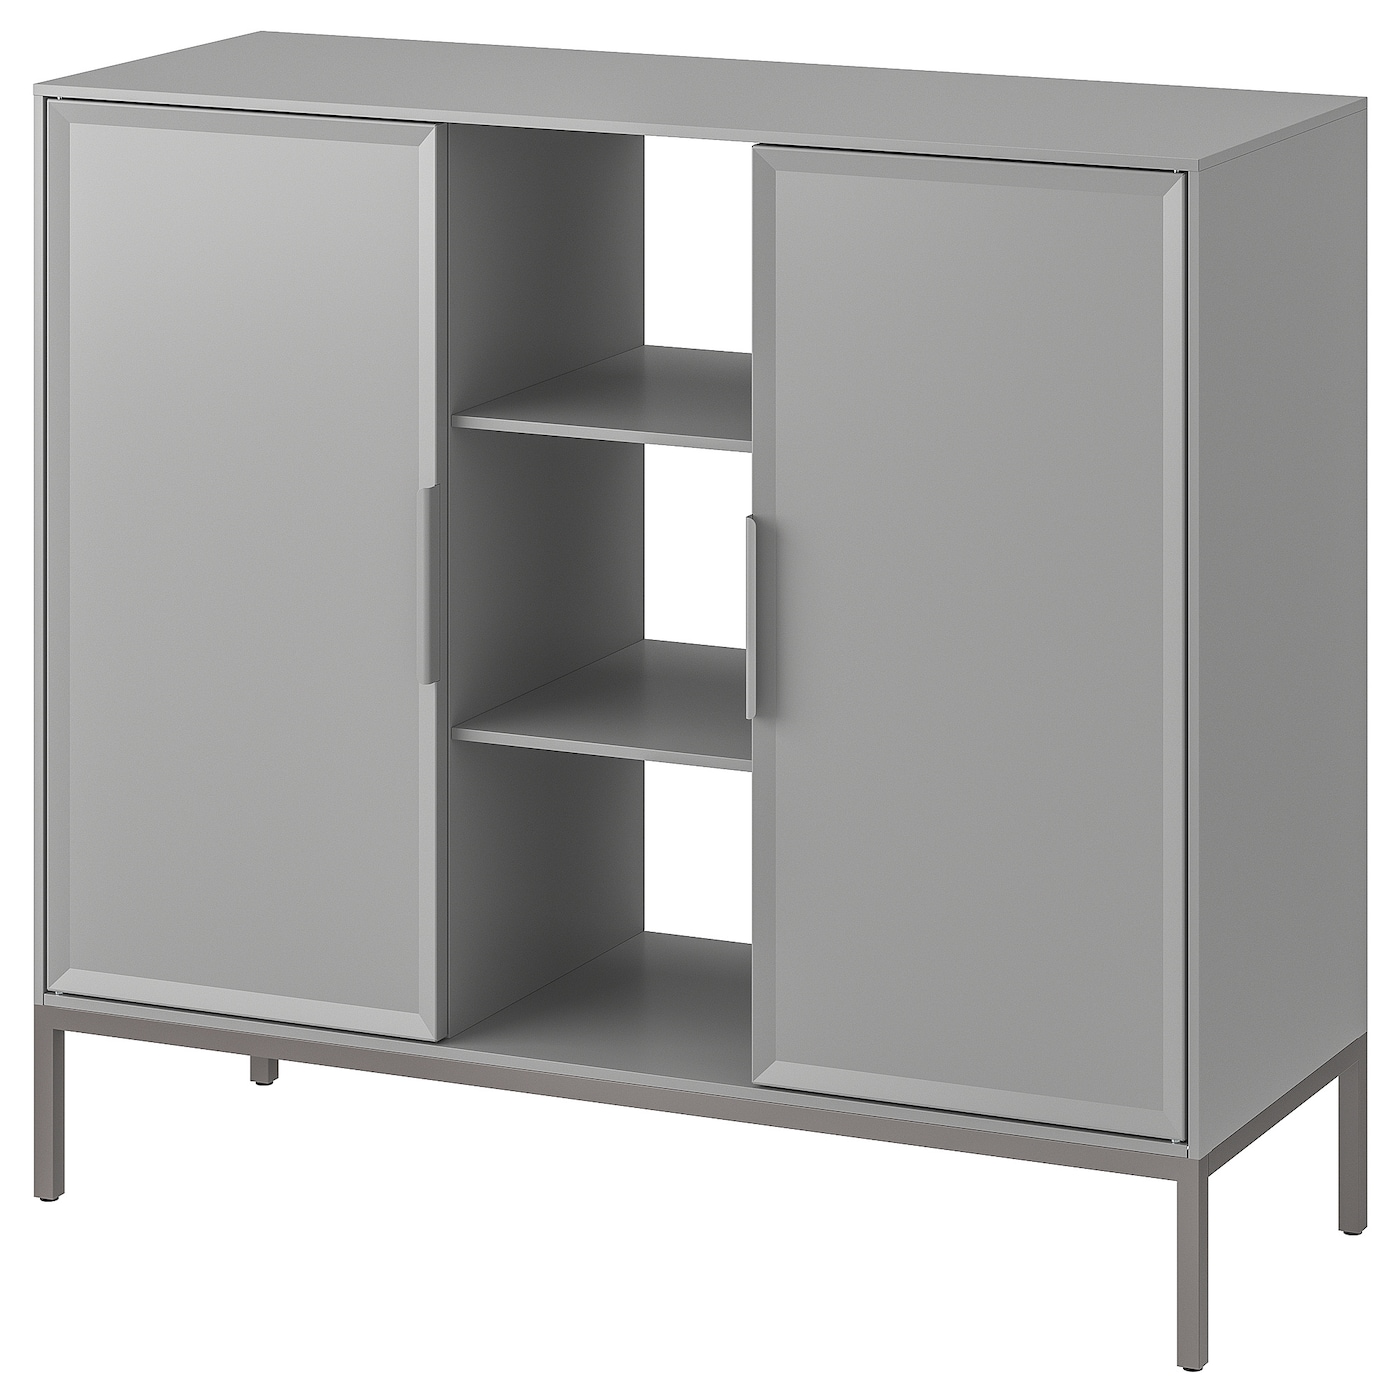 Шкаф - TULLSTORP IKEA/ ТАЛЛСТОРП ИКЕА, 99х89 см, серый